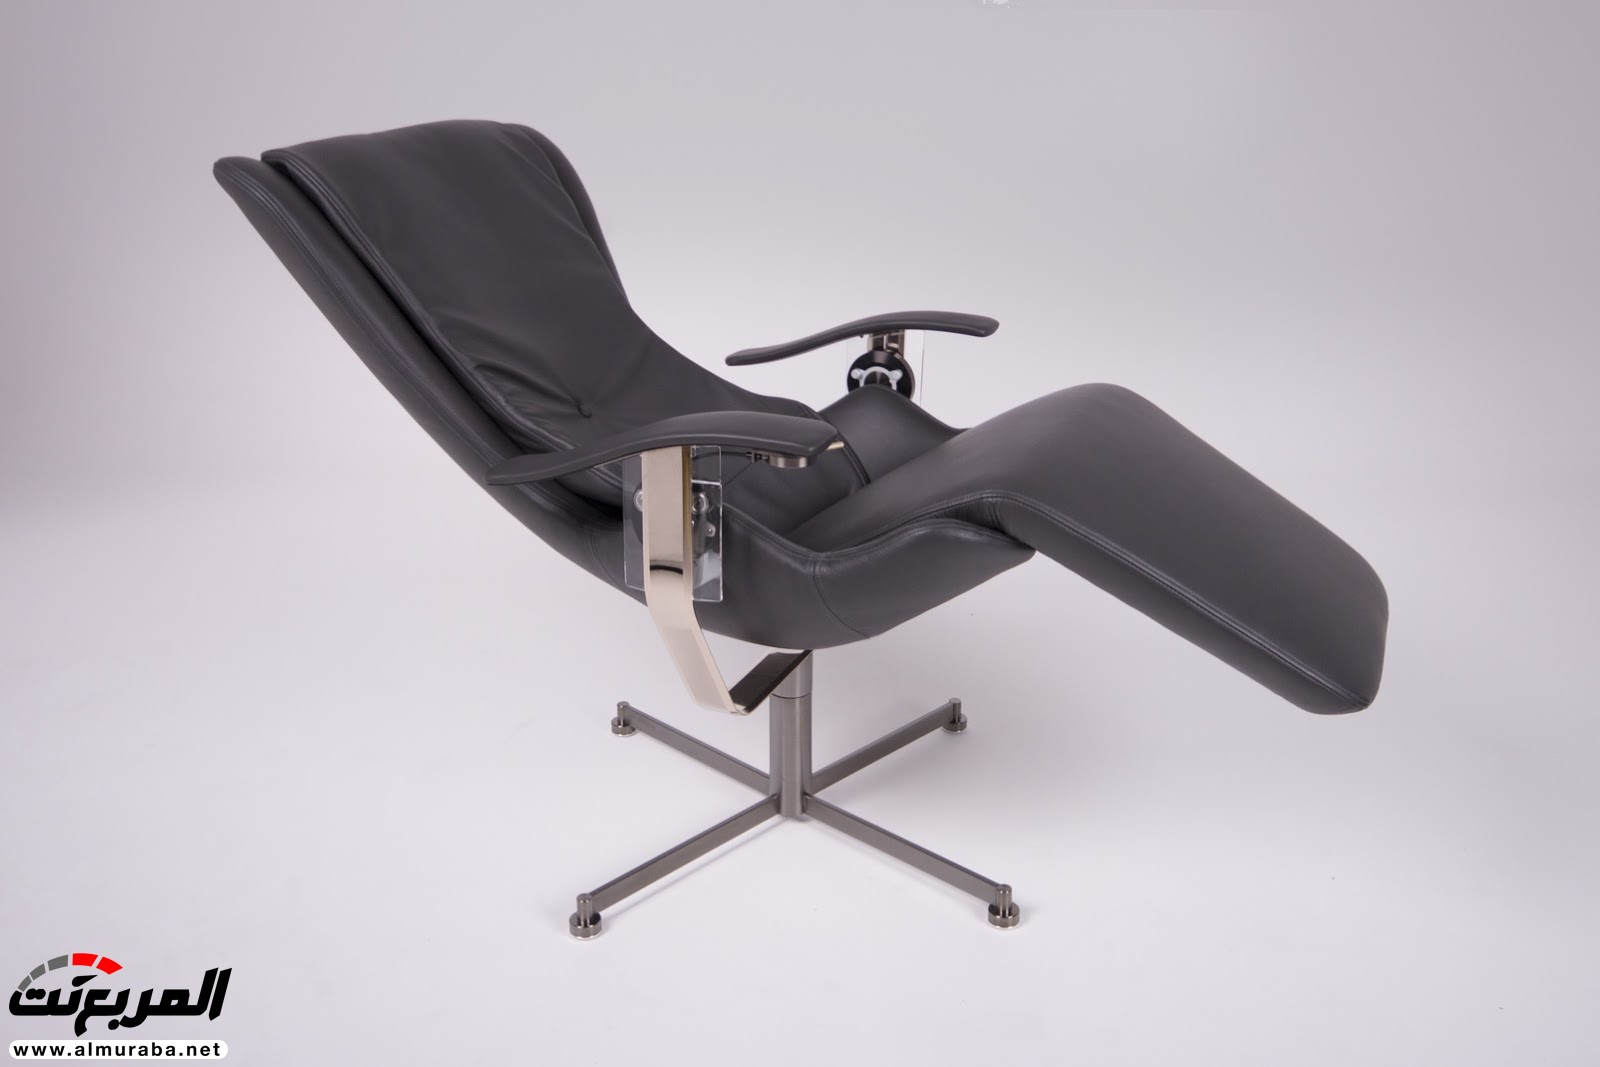 تعرف على مواصفات وسعر أغلى كرسي في العالم من شركة رولزرويس 6